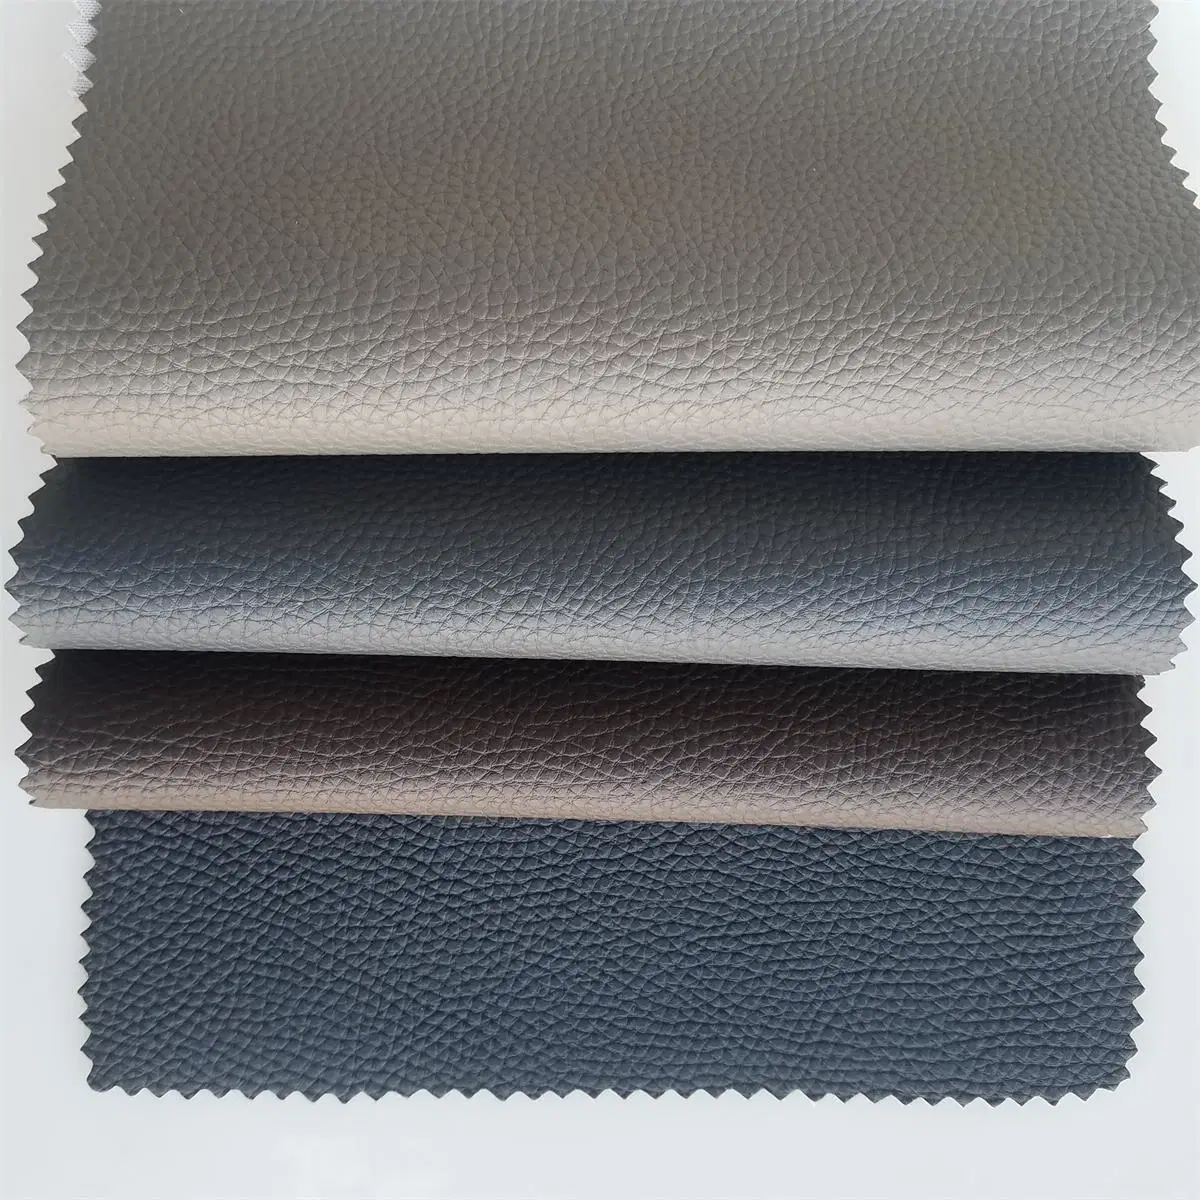 Fabricant de cuir synthétique en PVC pour la couverture de canapé avec une variété de doublures.